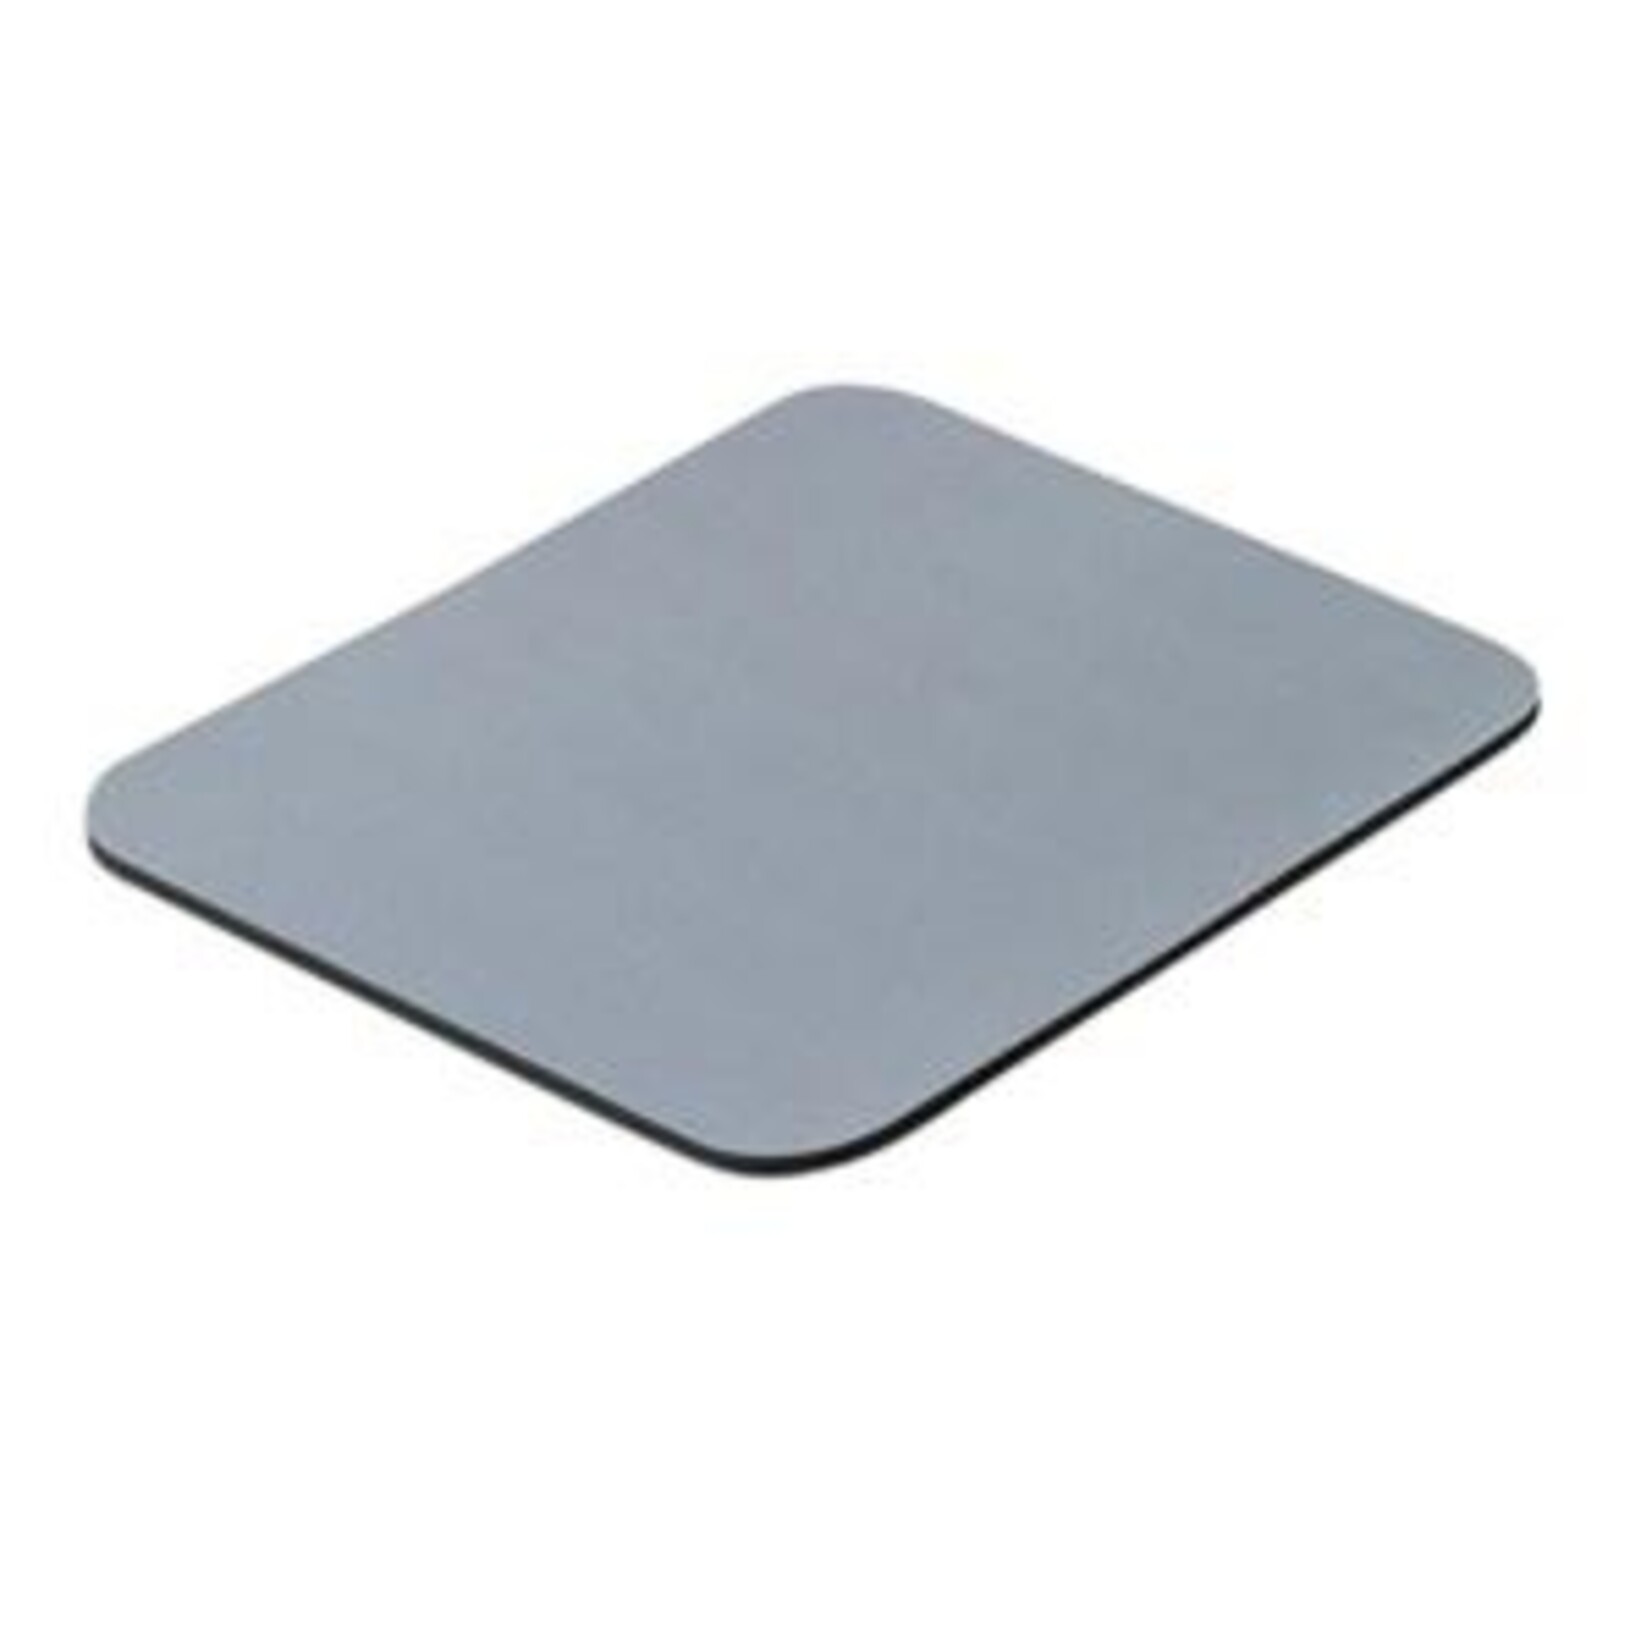 Belkin Standard Mouse Pad Gray